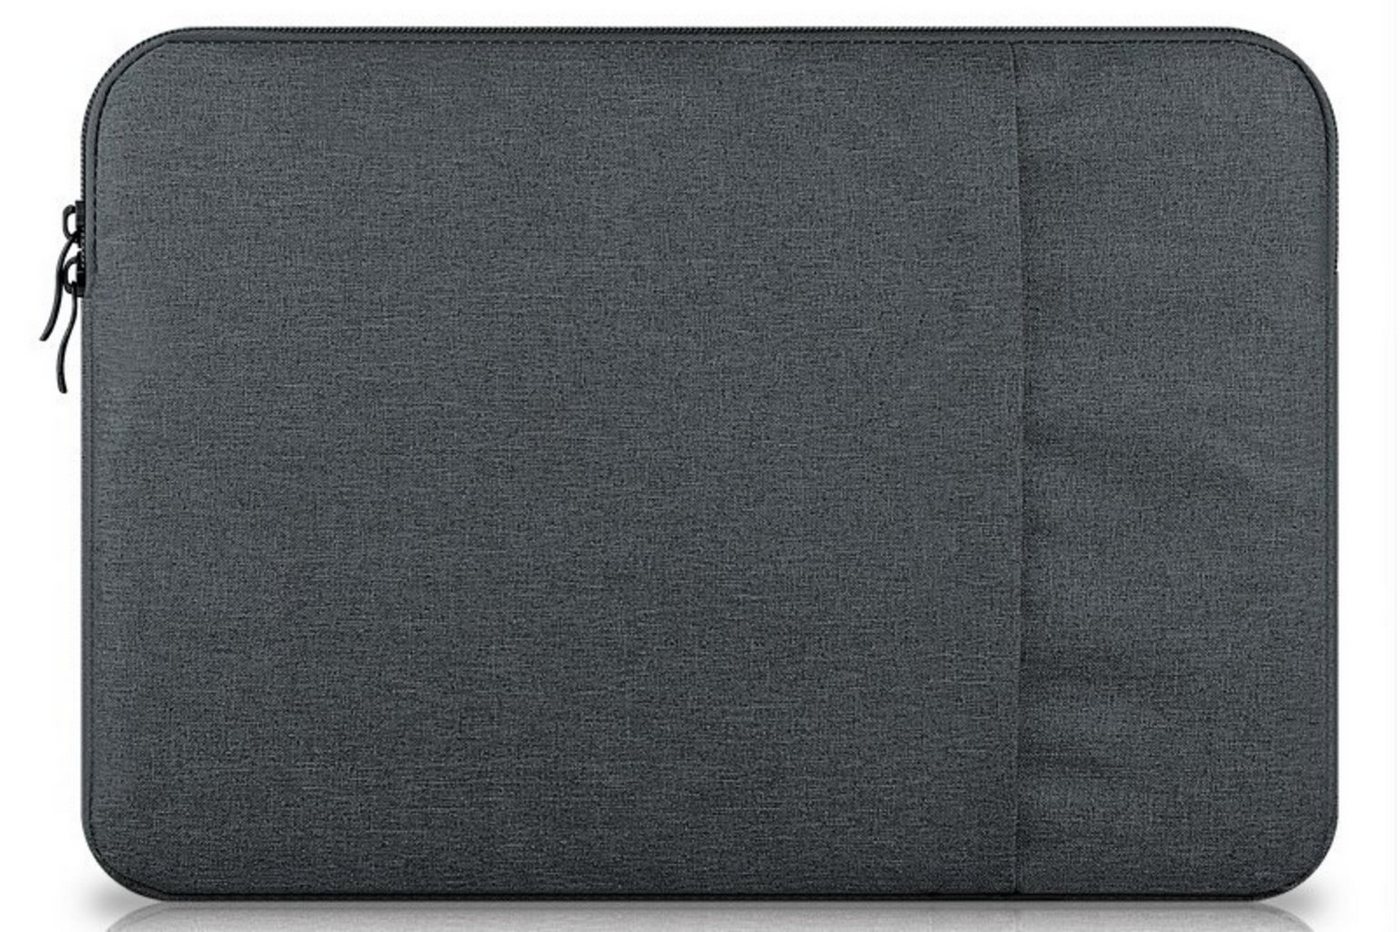 H-basics Laptoptasche Laptoptasche für Laptops bis 15 Zoll, Notebook Schutzhülle wasserfest und gepolstert mit Reißverschluss und extra Seitentasche" von H-basics